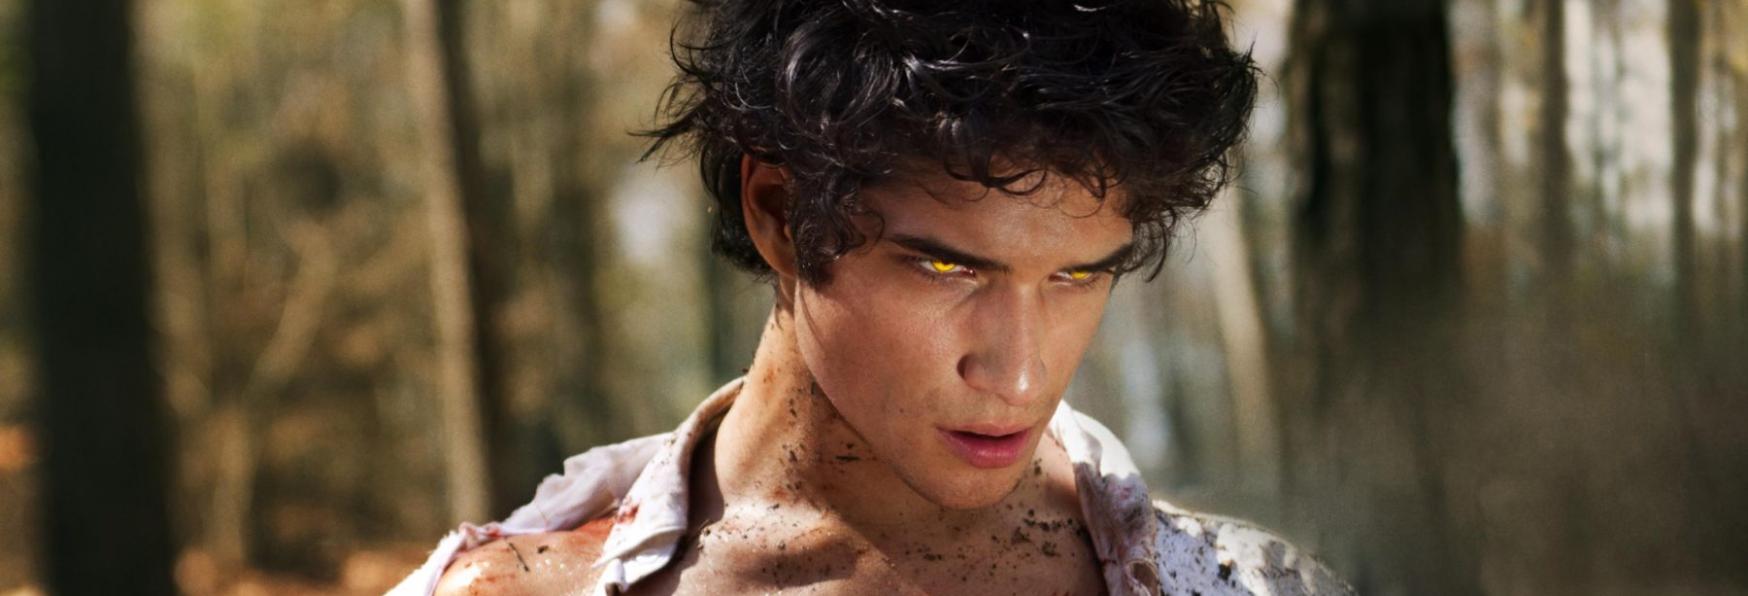 Teen Wolf: il Film Revival avrà il Cast Originale della Serie TV